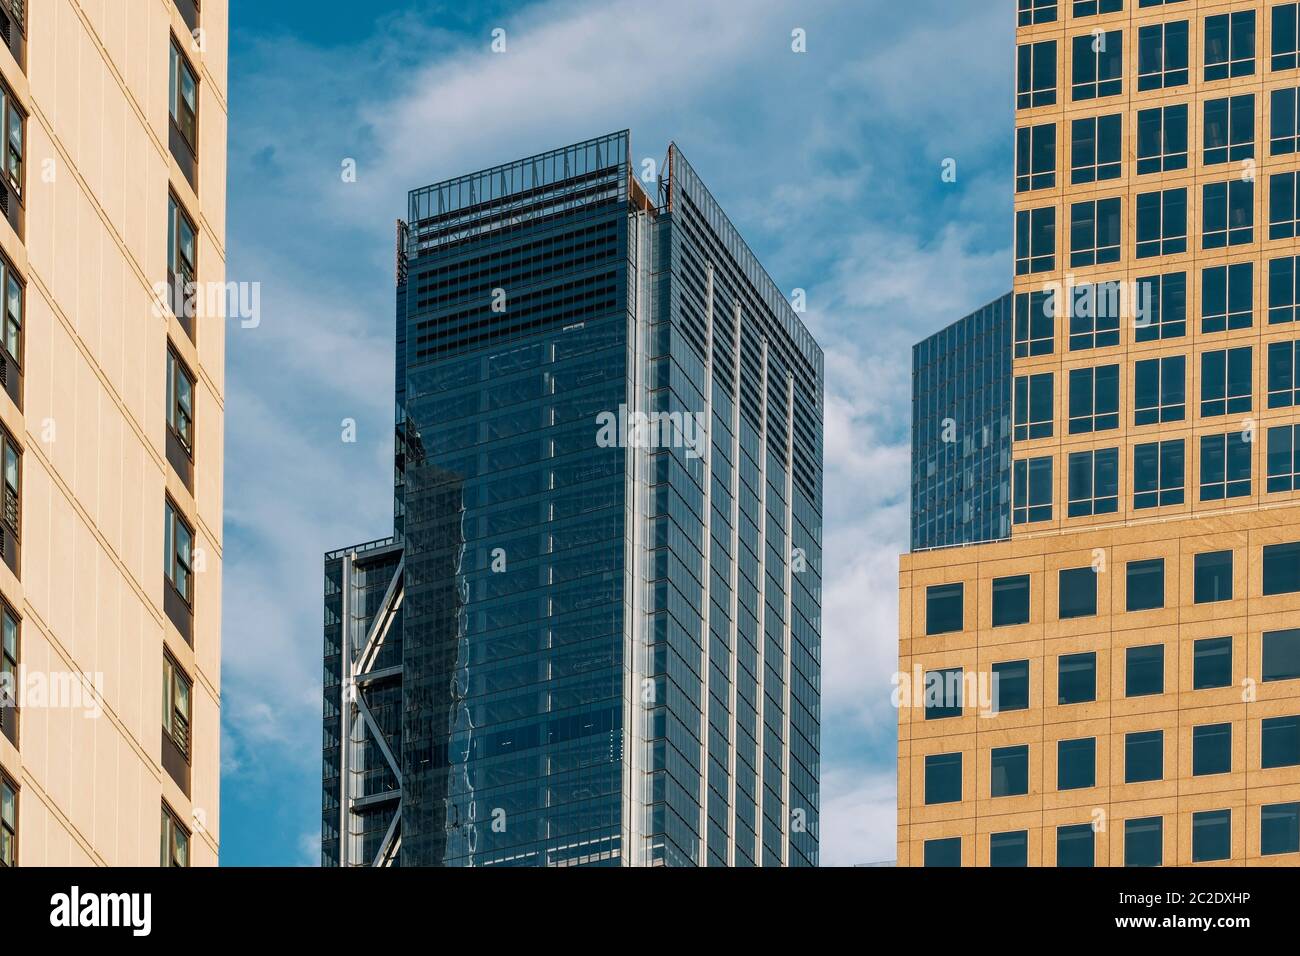 Vue rapprochée des gratte-ciels modernes du quartier financier de Lower Manhattan New York Banque D'Images